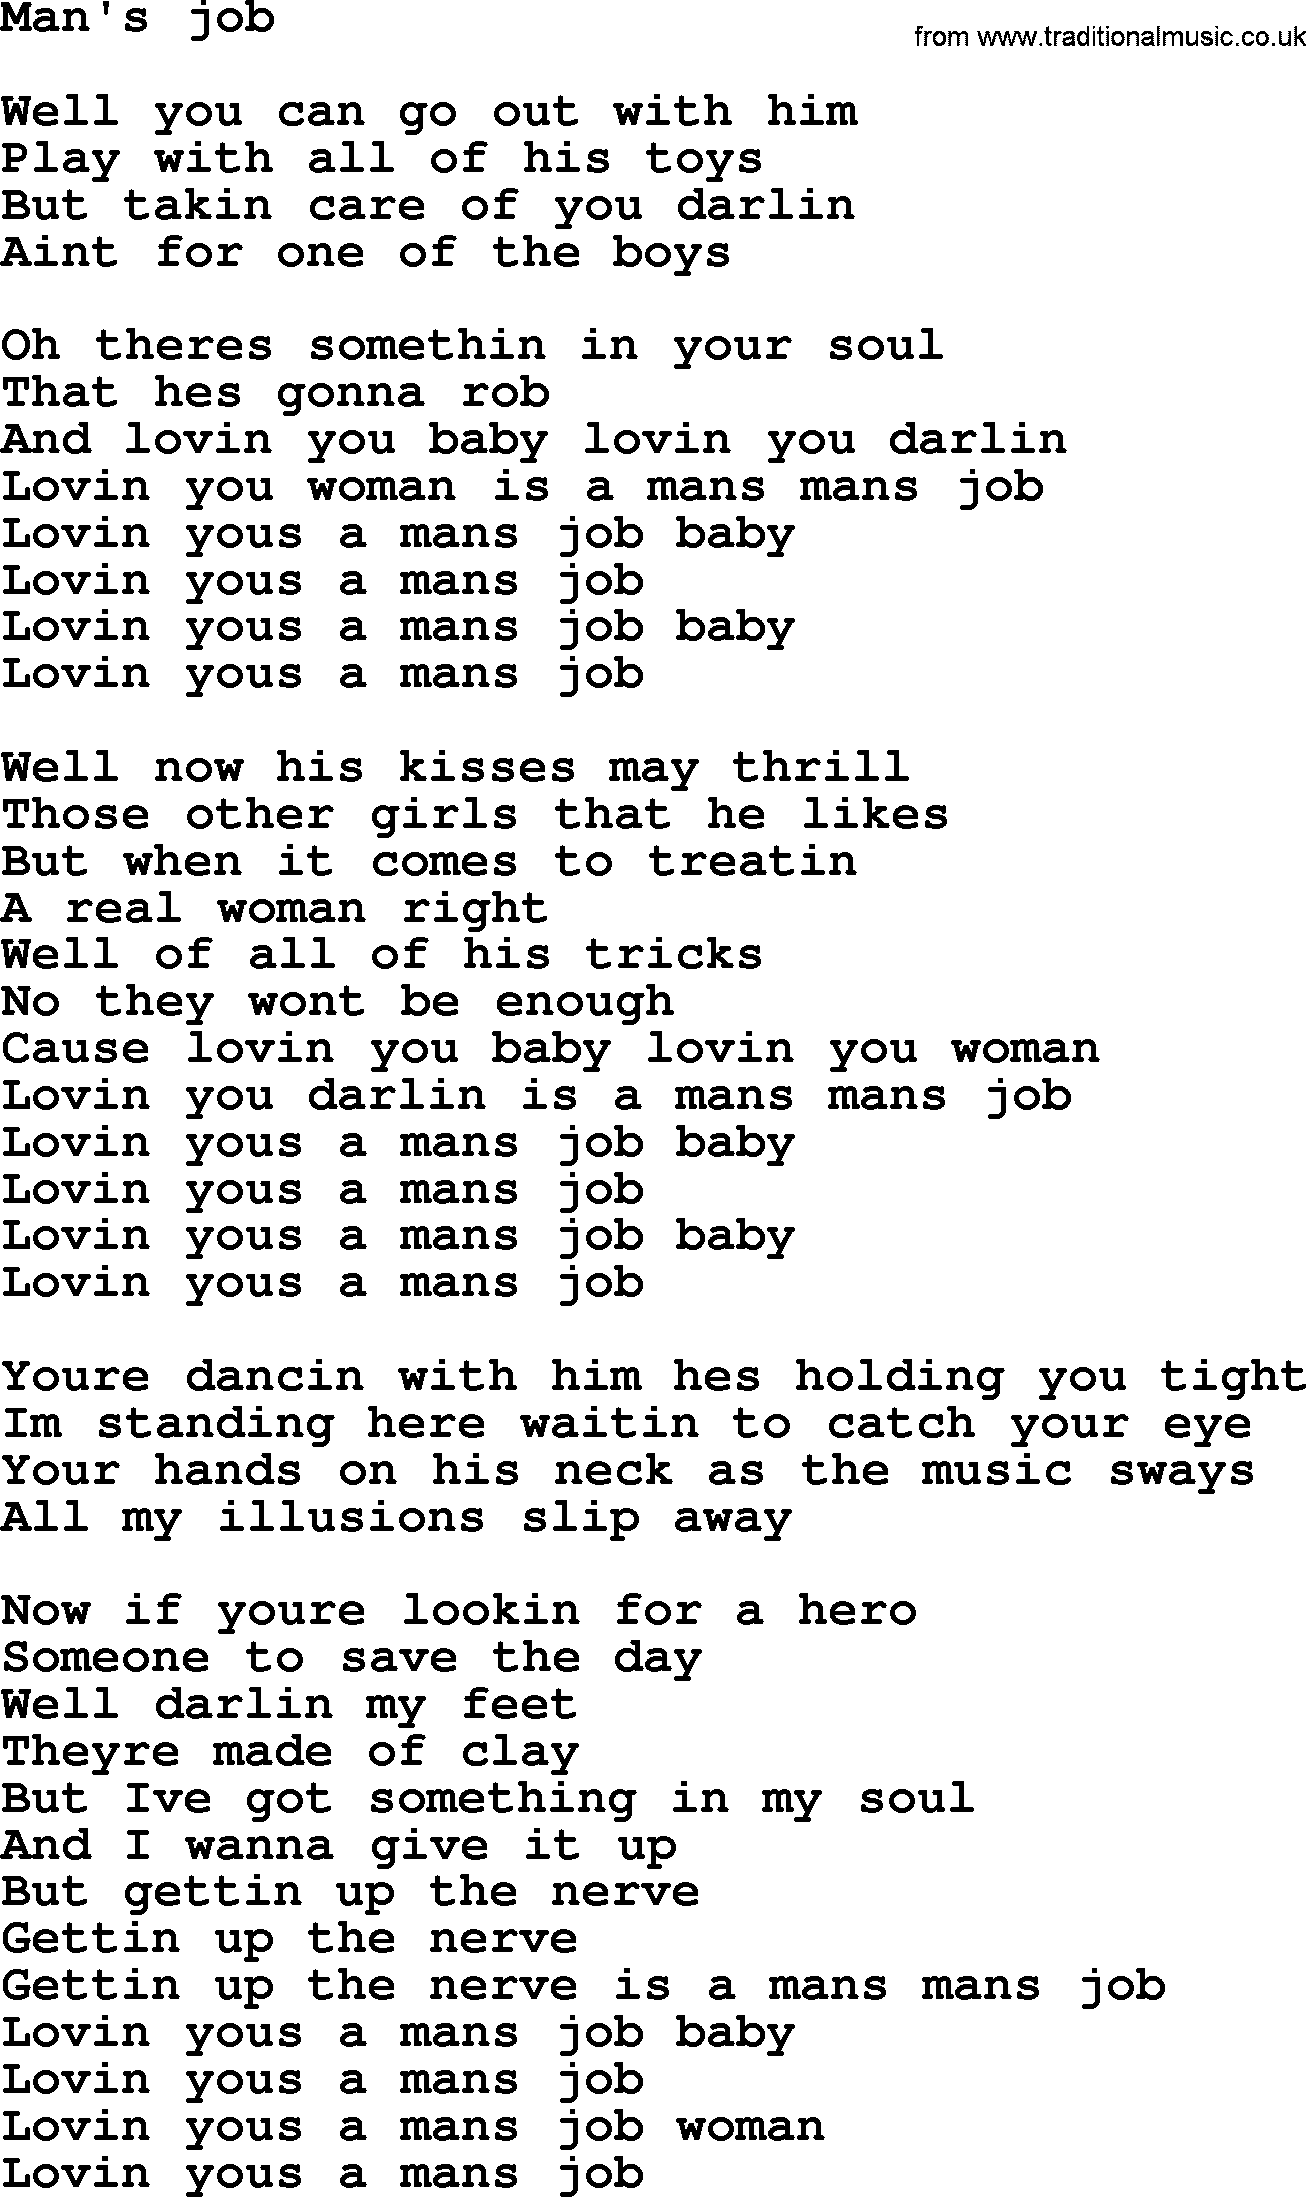 Bruce Springsteen song: Man's Job lyrics